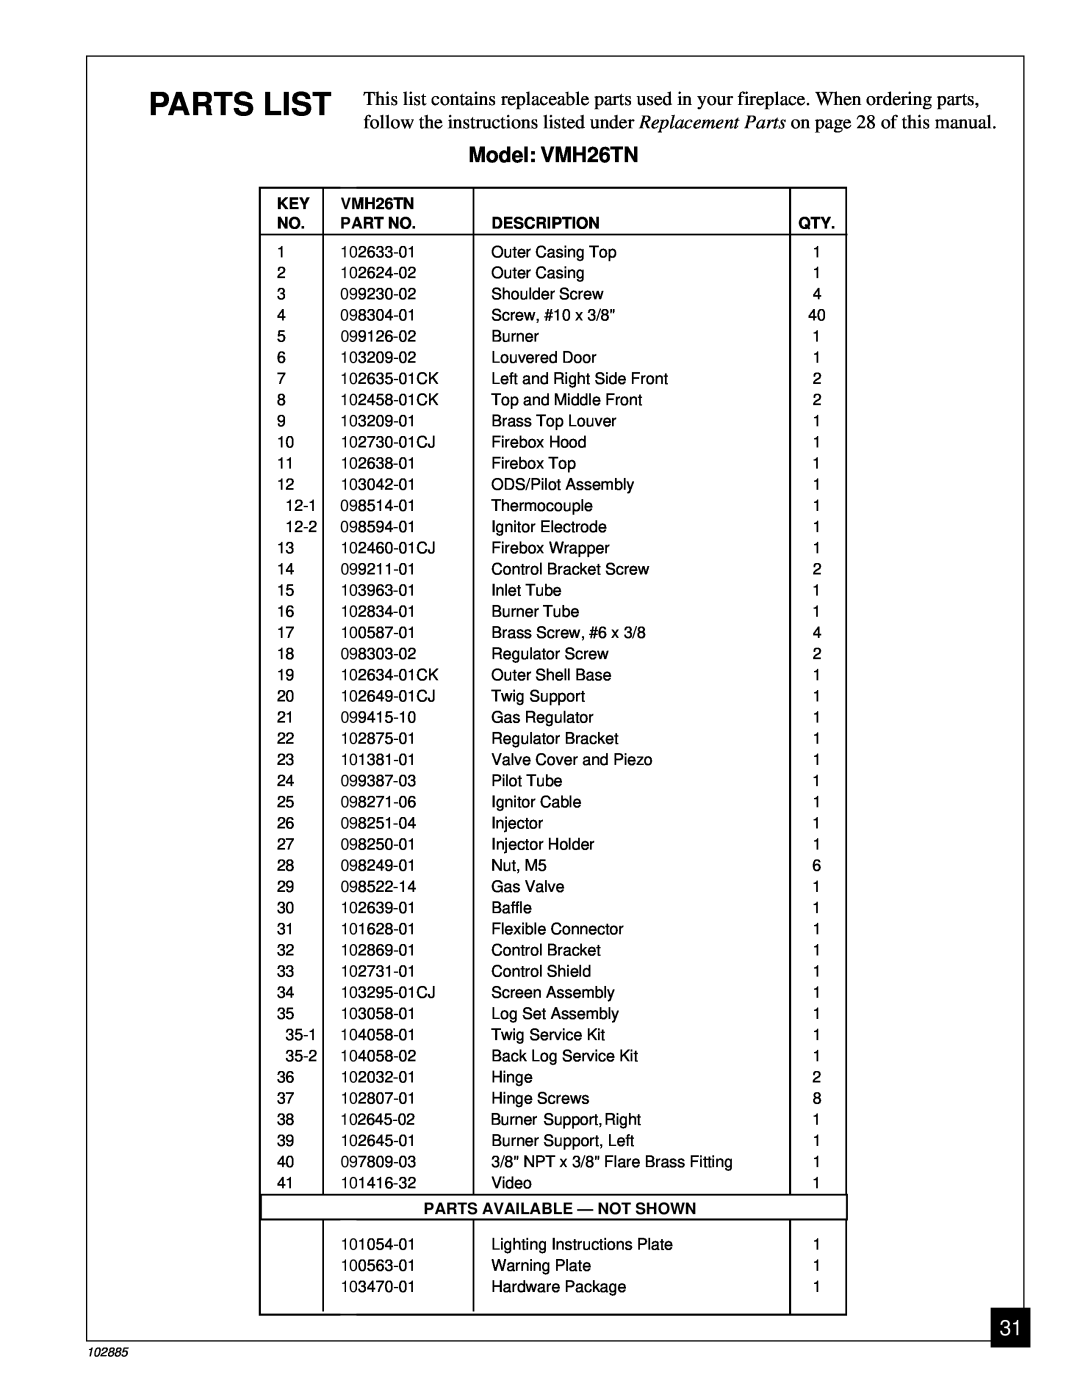 Vanguard Heating installation manual Parts List, Model VMH26TN 